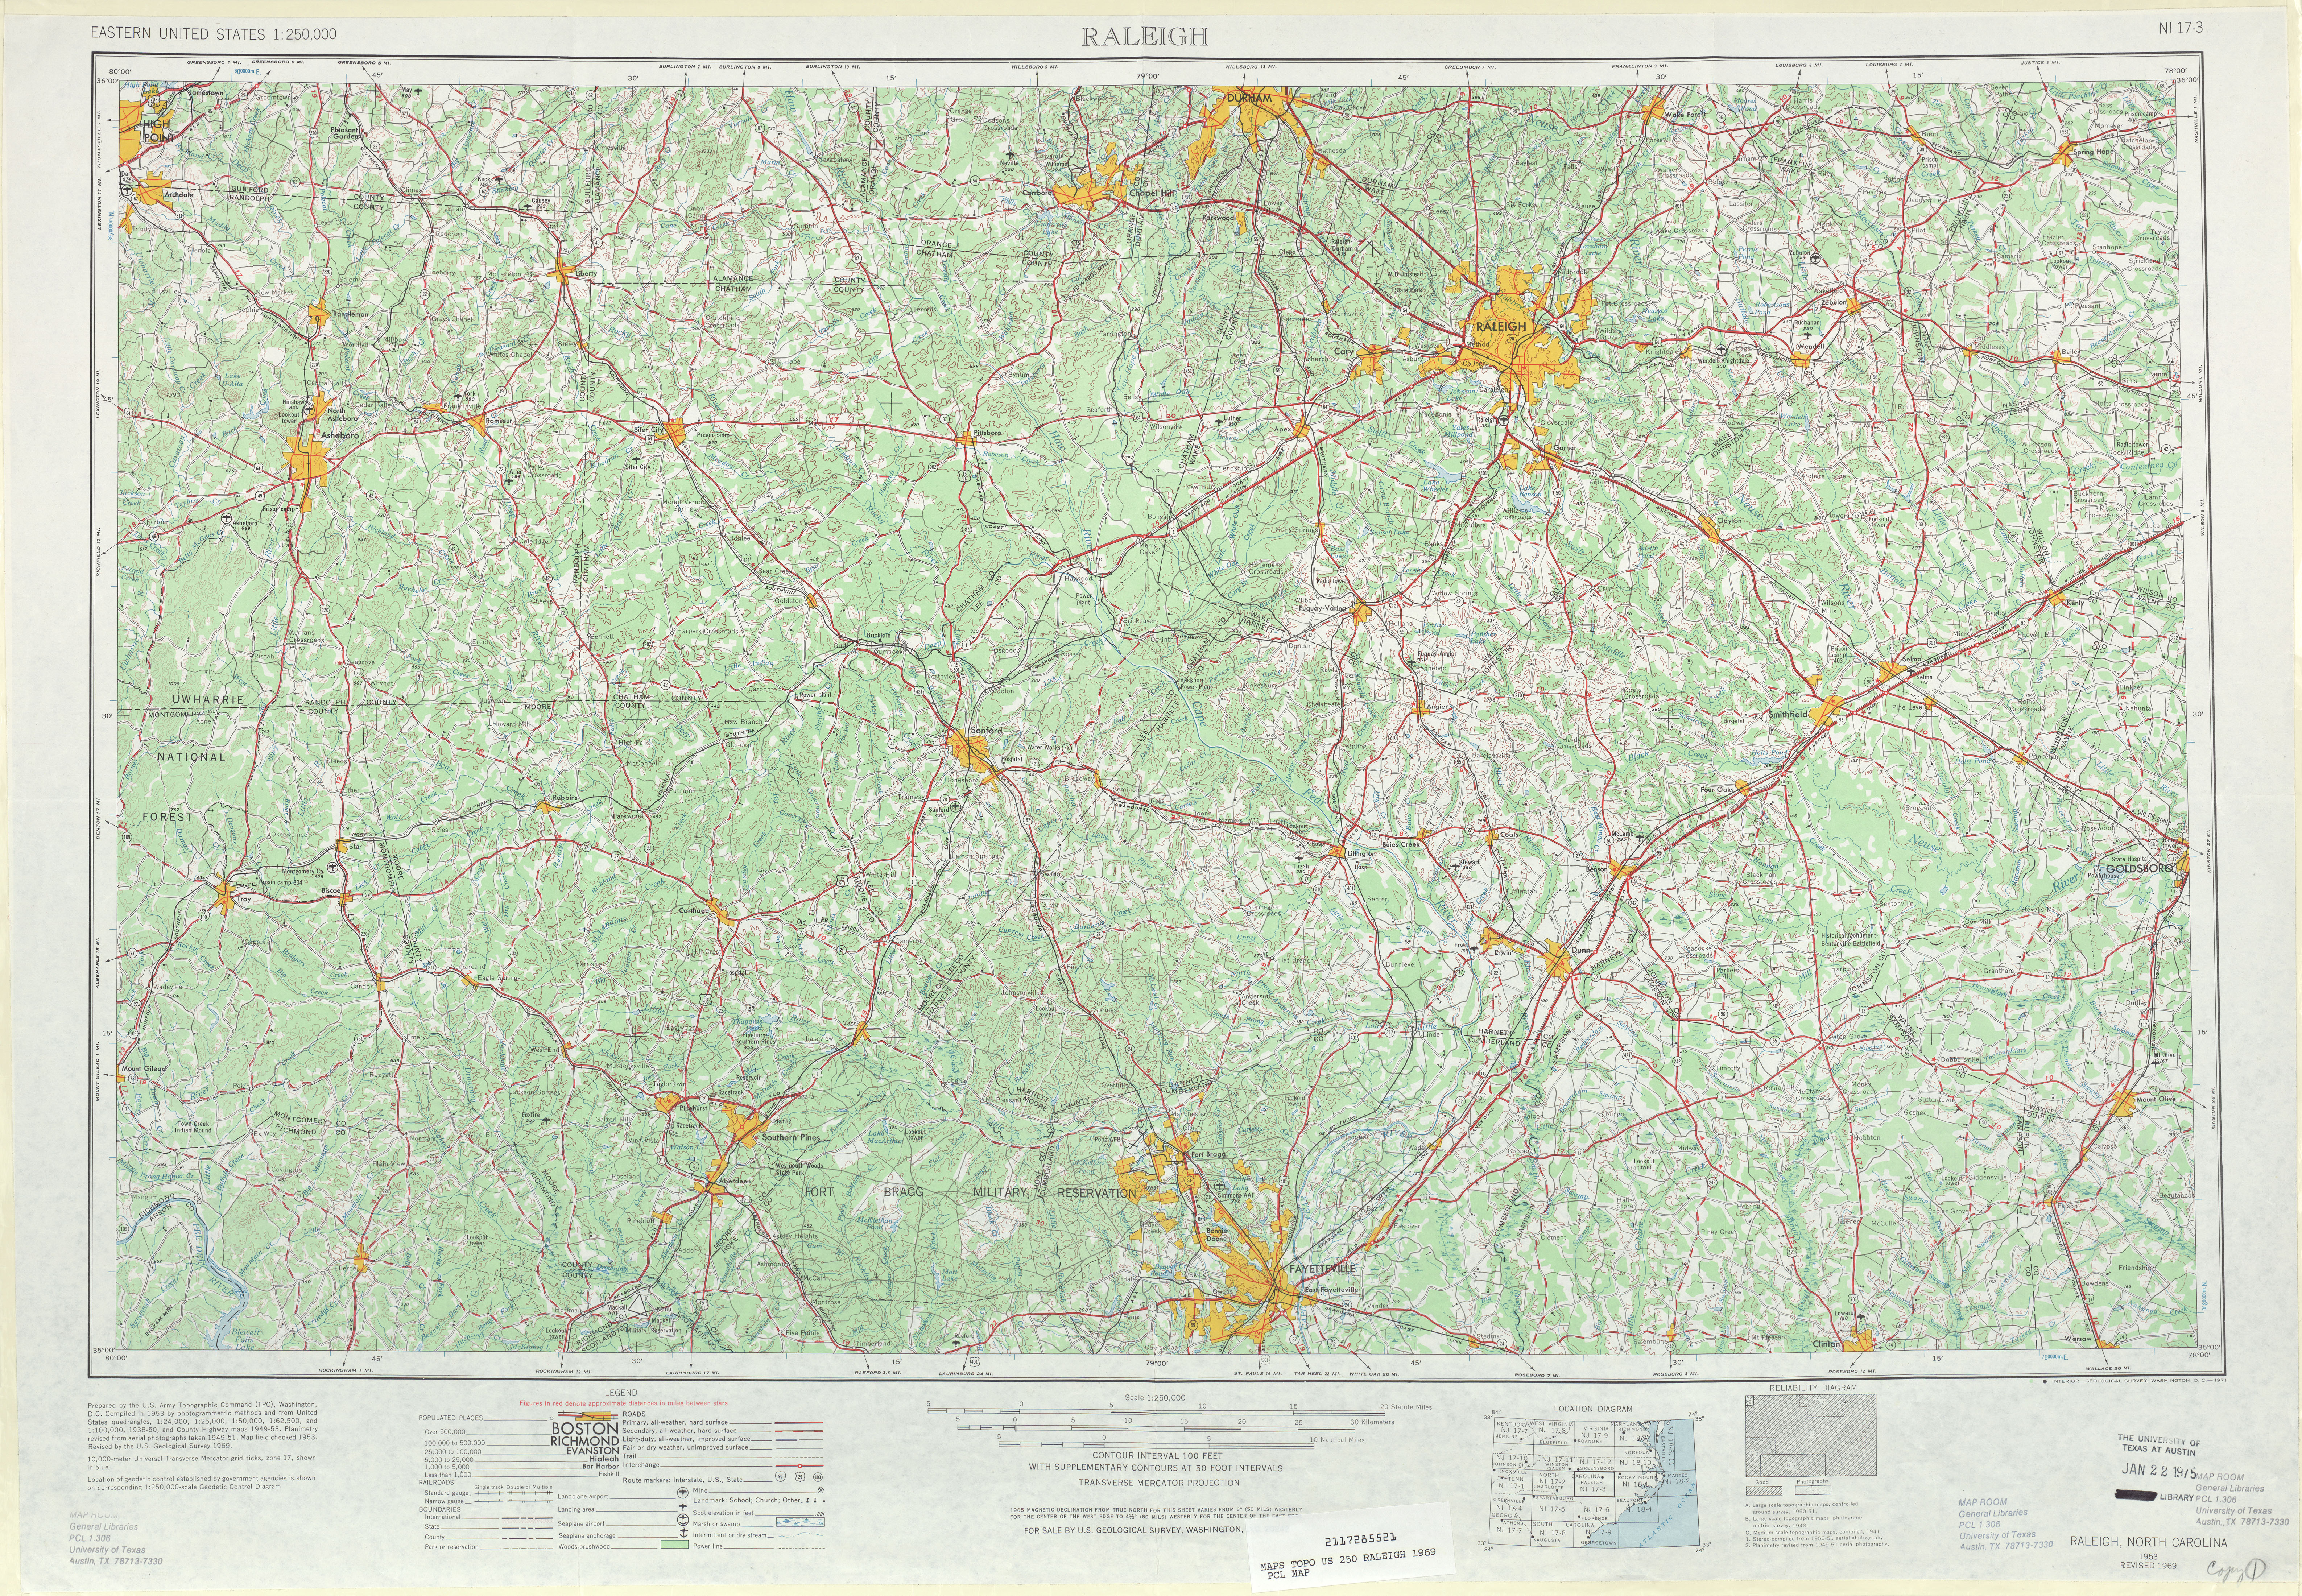 Hoja Raleigh del Mapa Topográfico de los Estados Unidos 1969